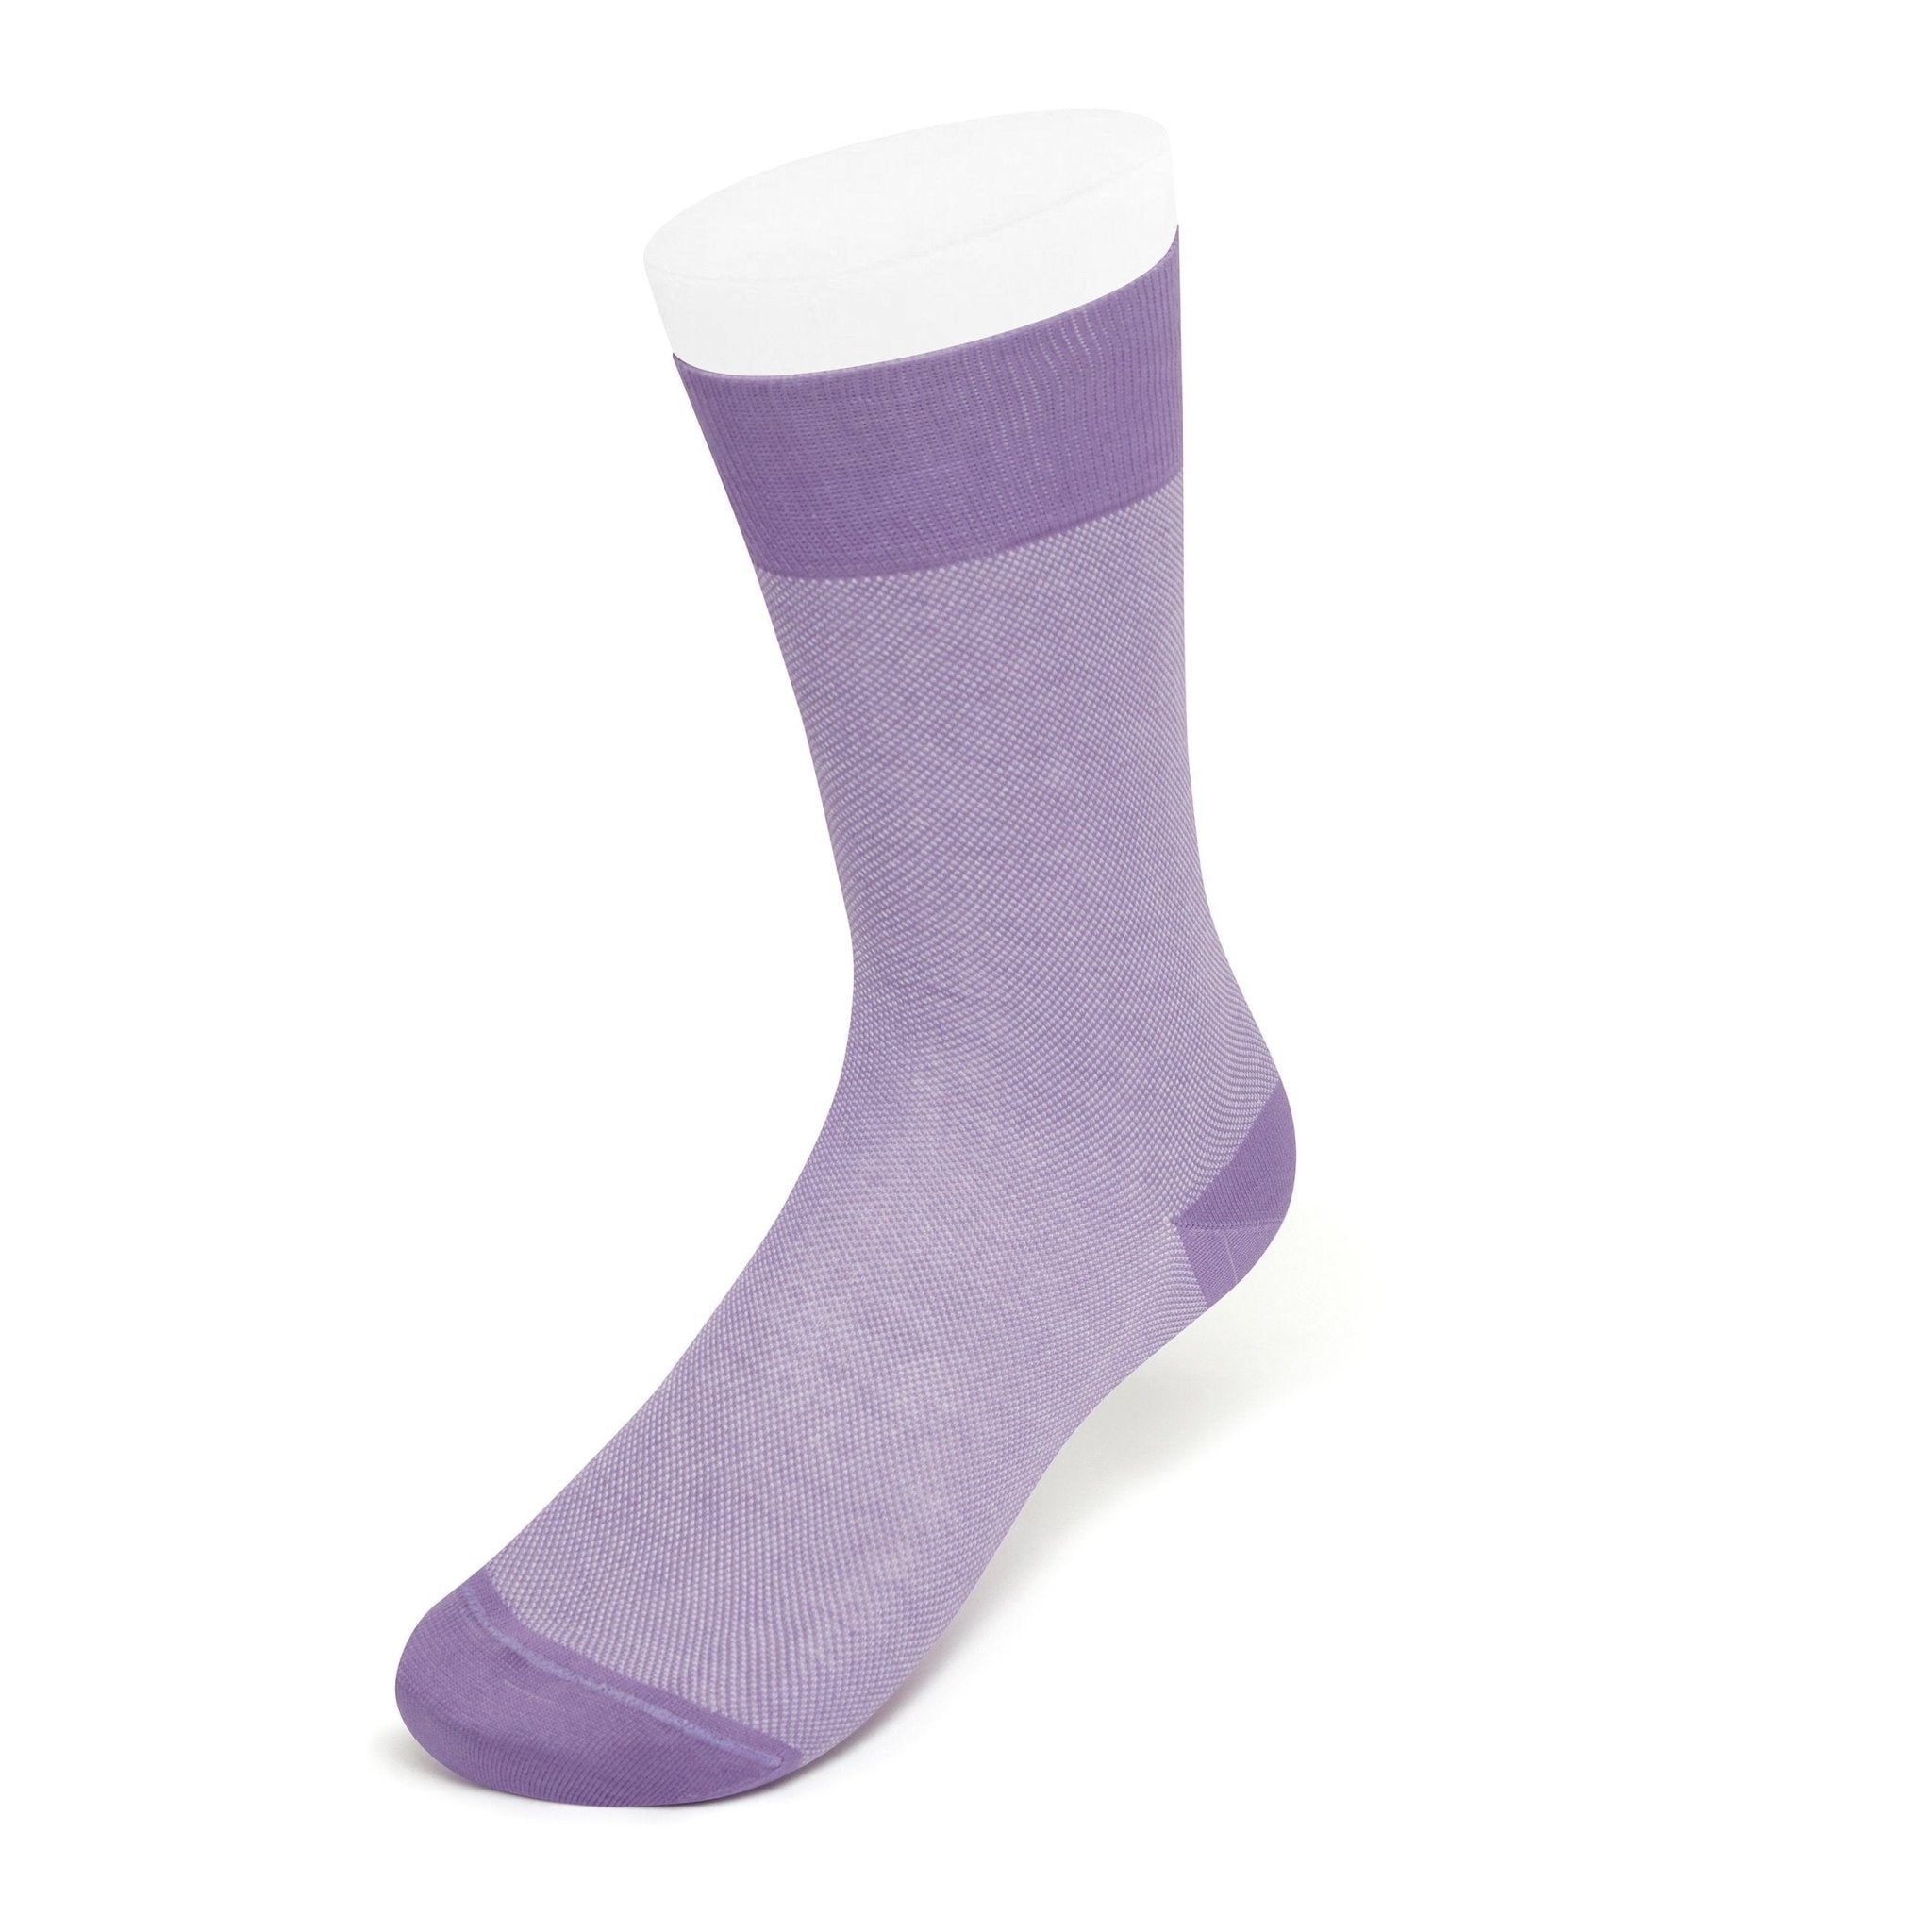 Lilac & White Pin Dot Cotton Short Socks